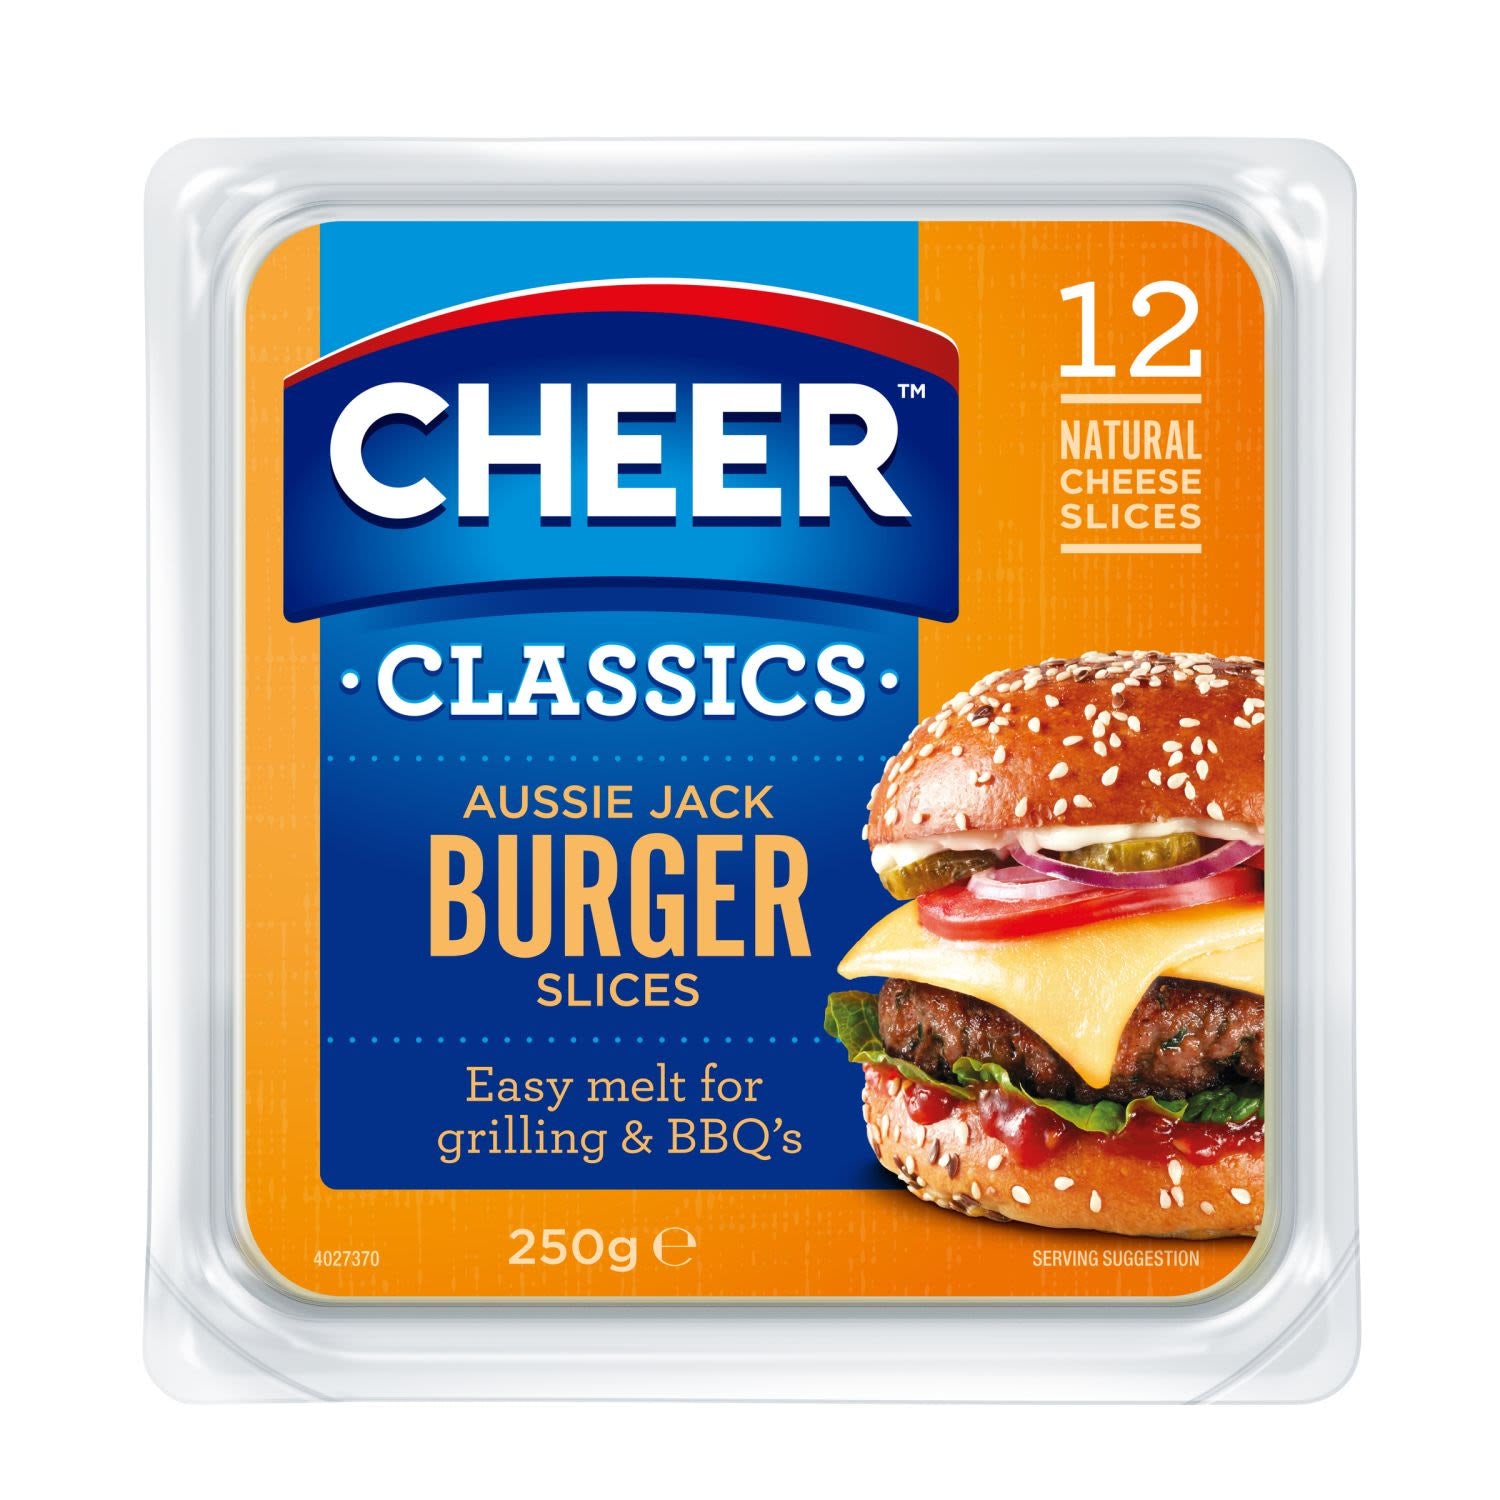 Cheer Aussie Jack Burger Slices 250g